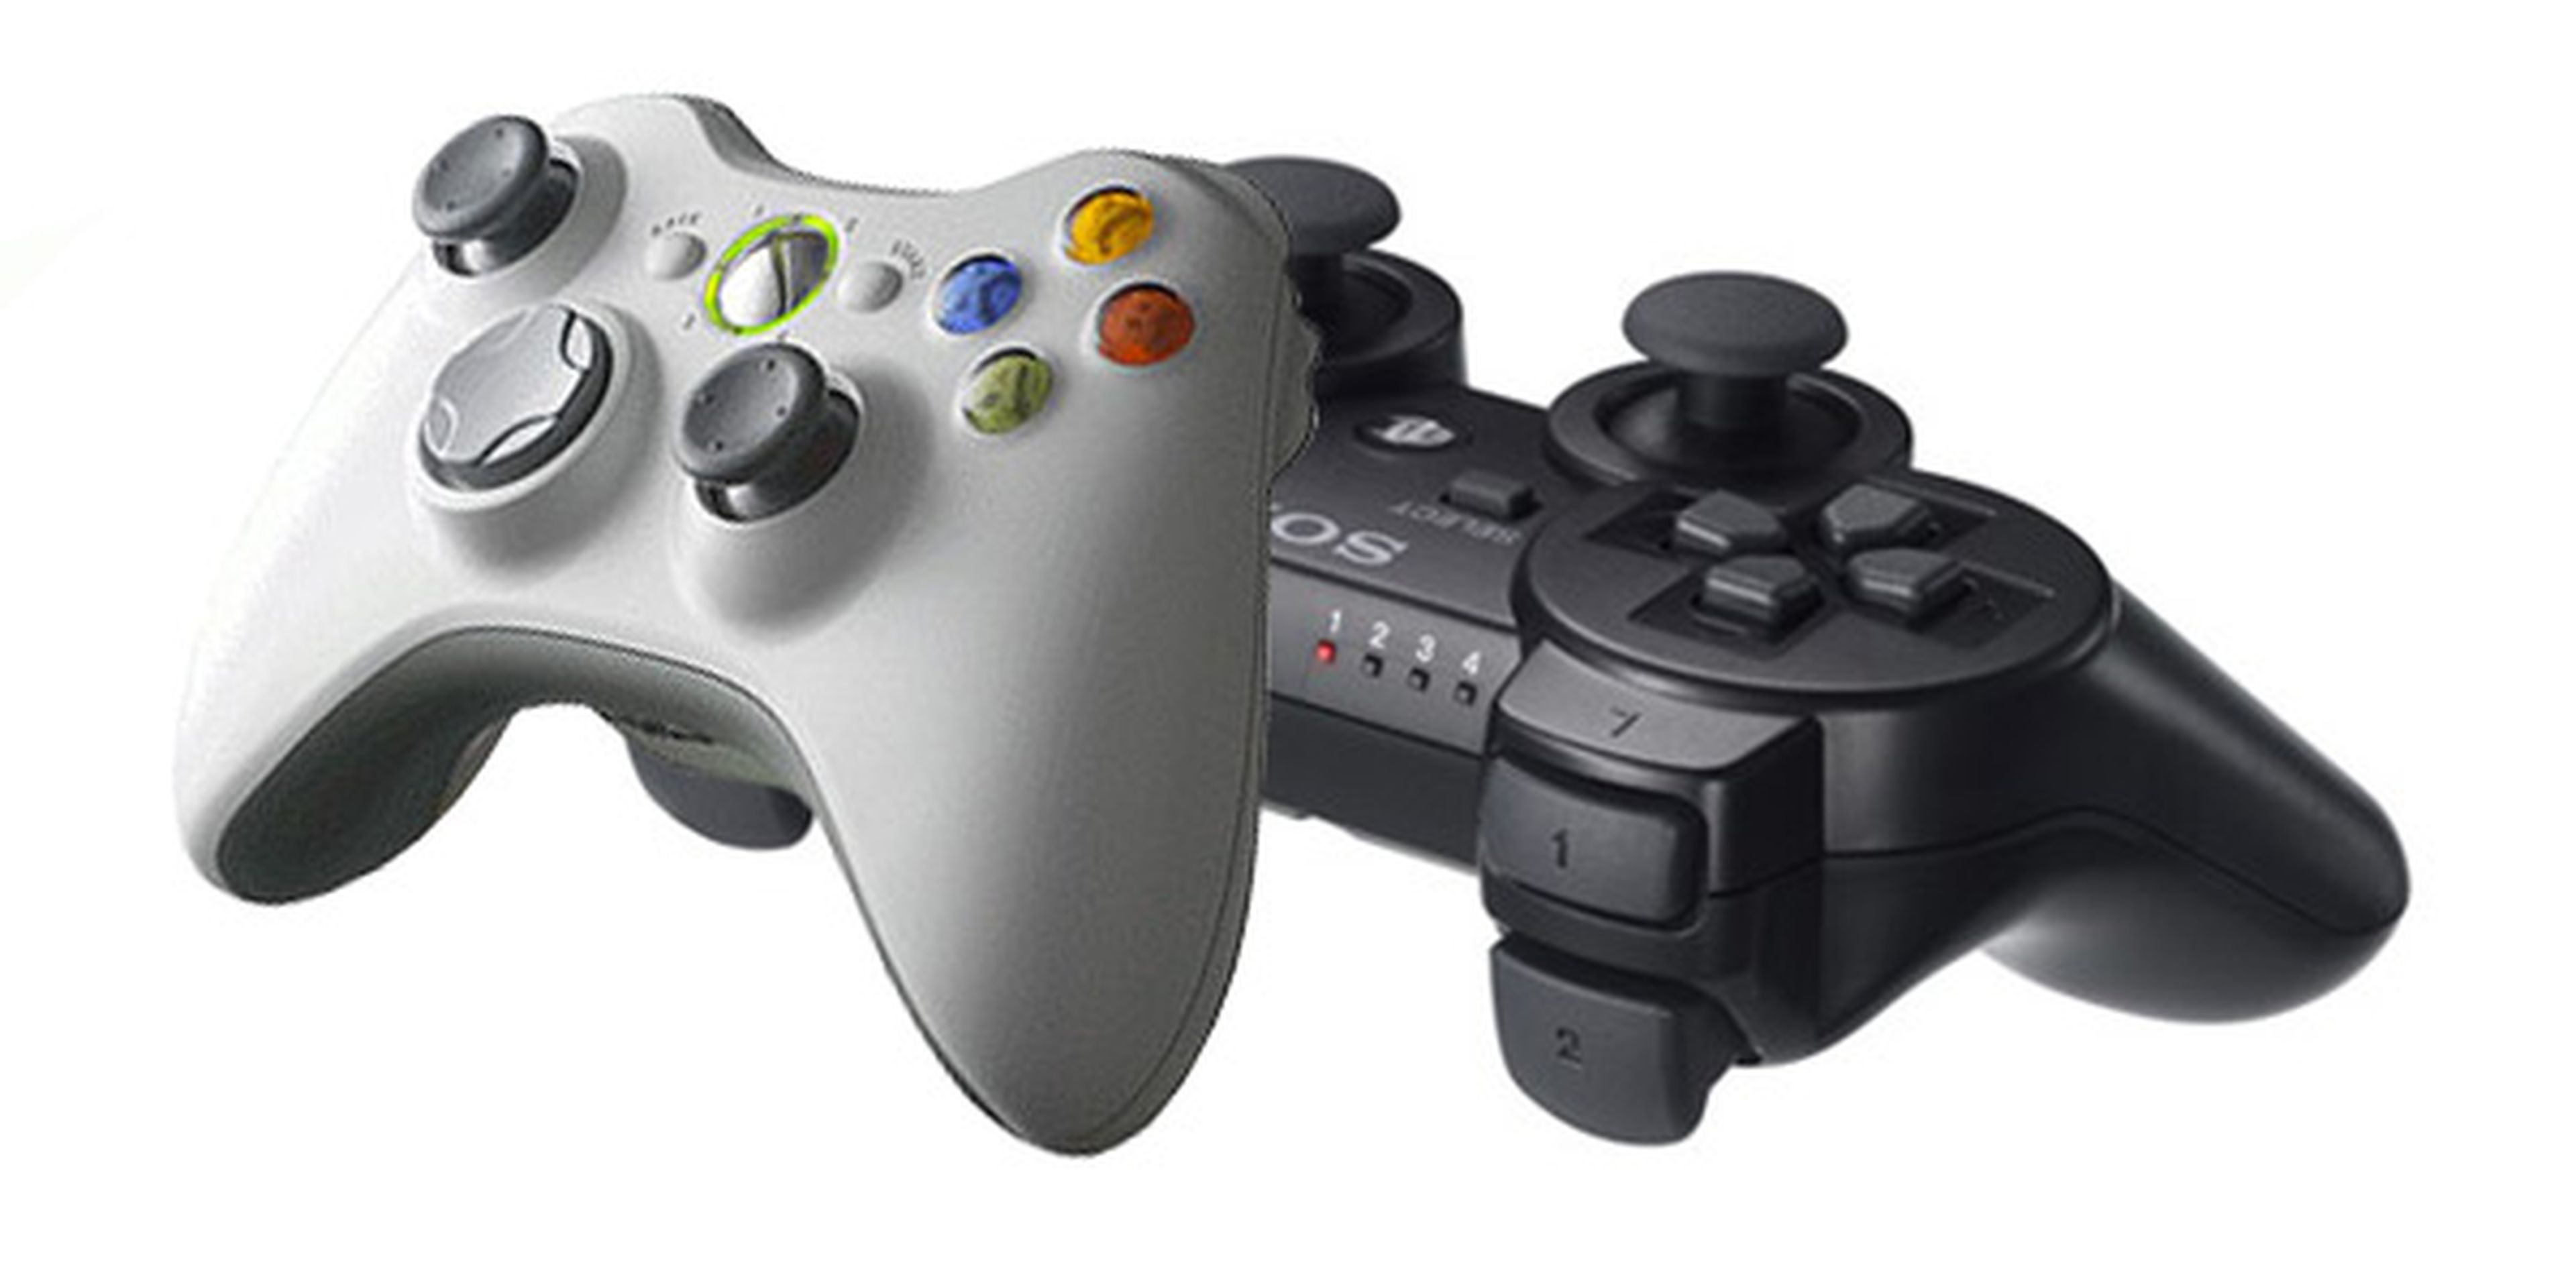 EA descarta rebajas en el precio de PS3 y Xbox 360 hasta 2015